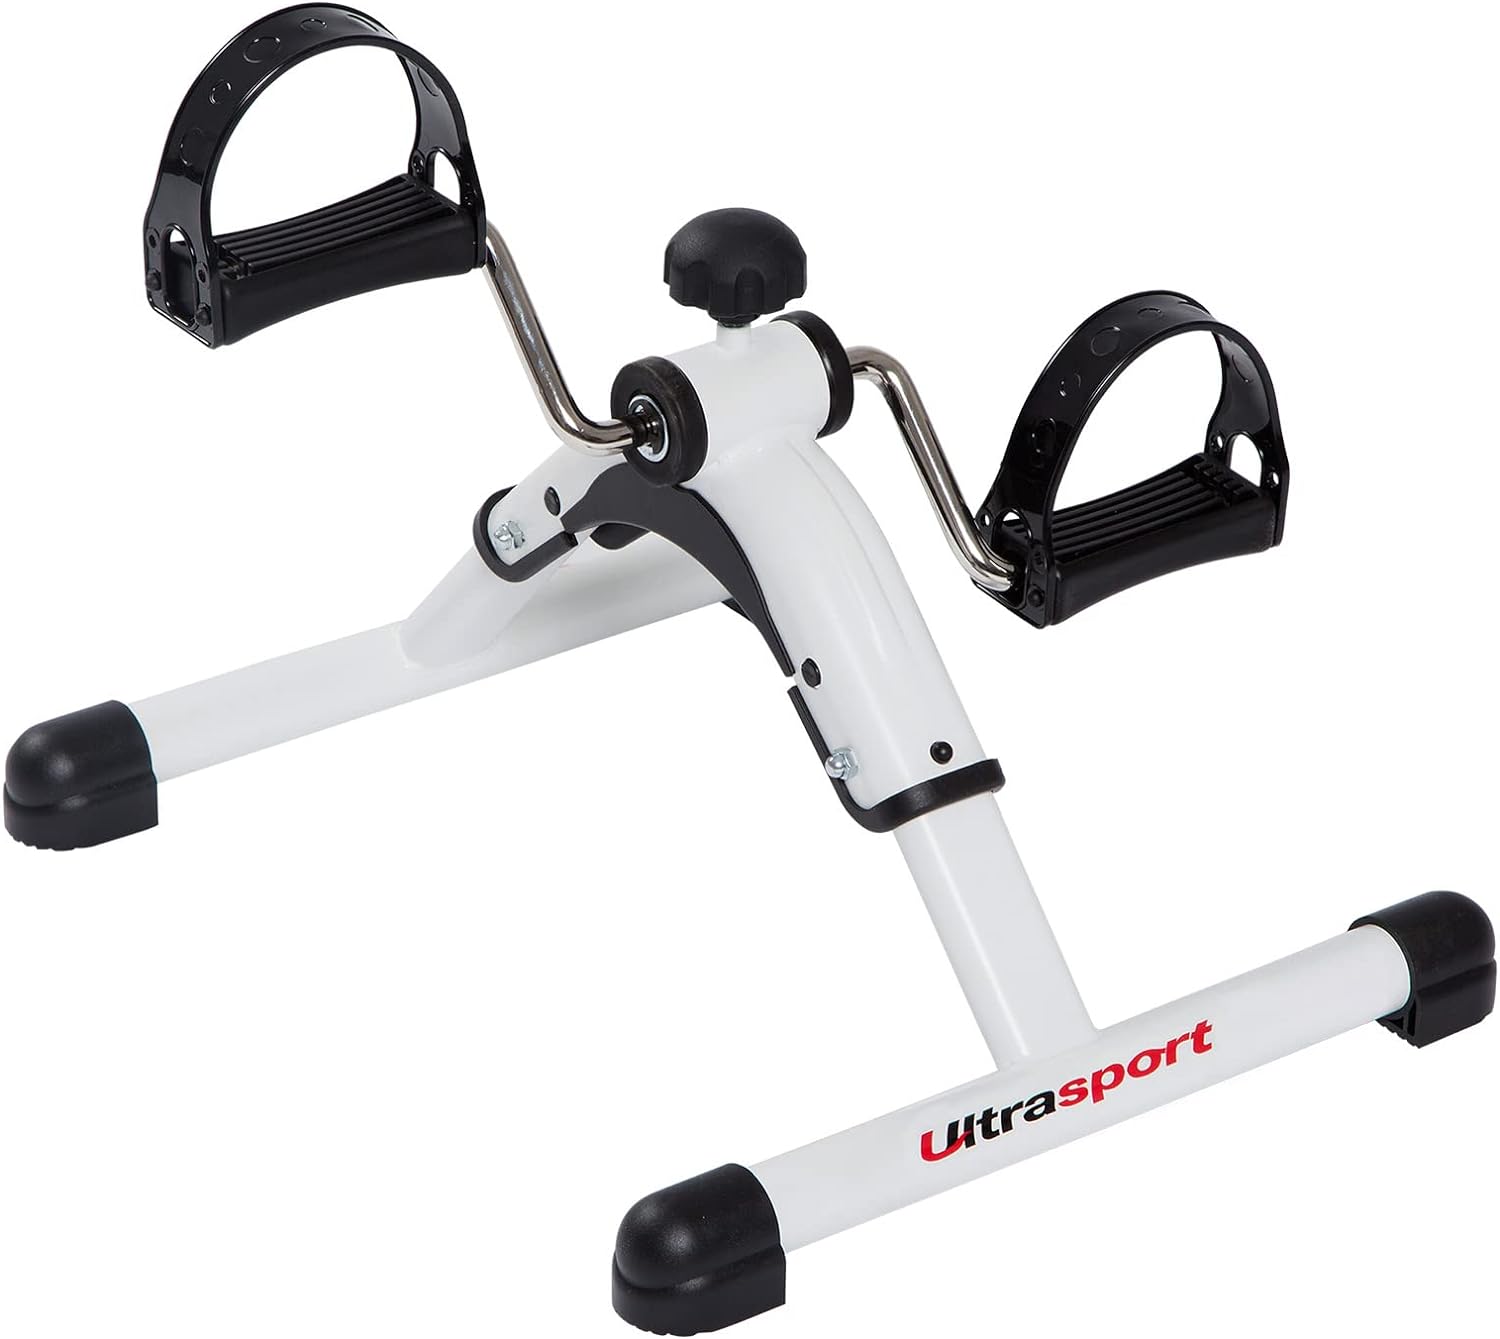 Ultrasport Mini Bike, vélo d'exercice Compact, Exercice pour Les Bras et Les Jambes, Exercice à pédales, idéal pour Les Personnes âgées - fitnessterapy